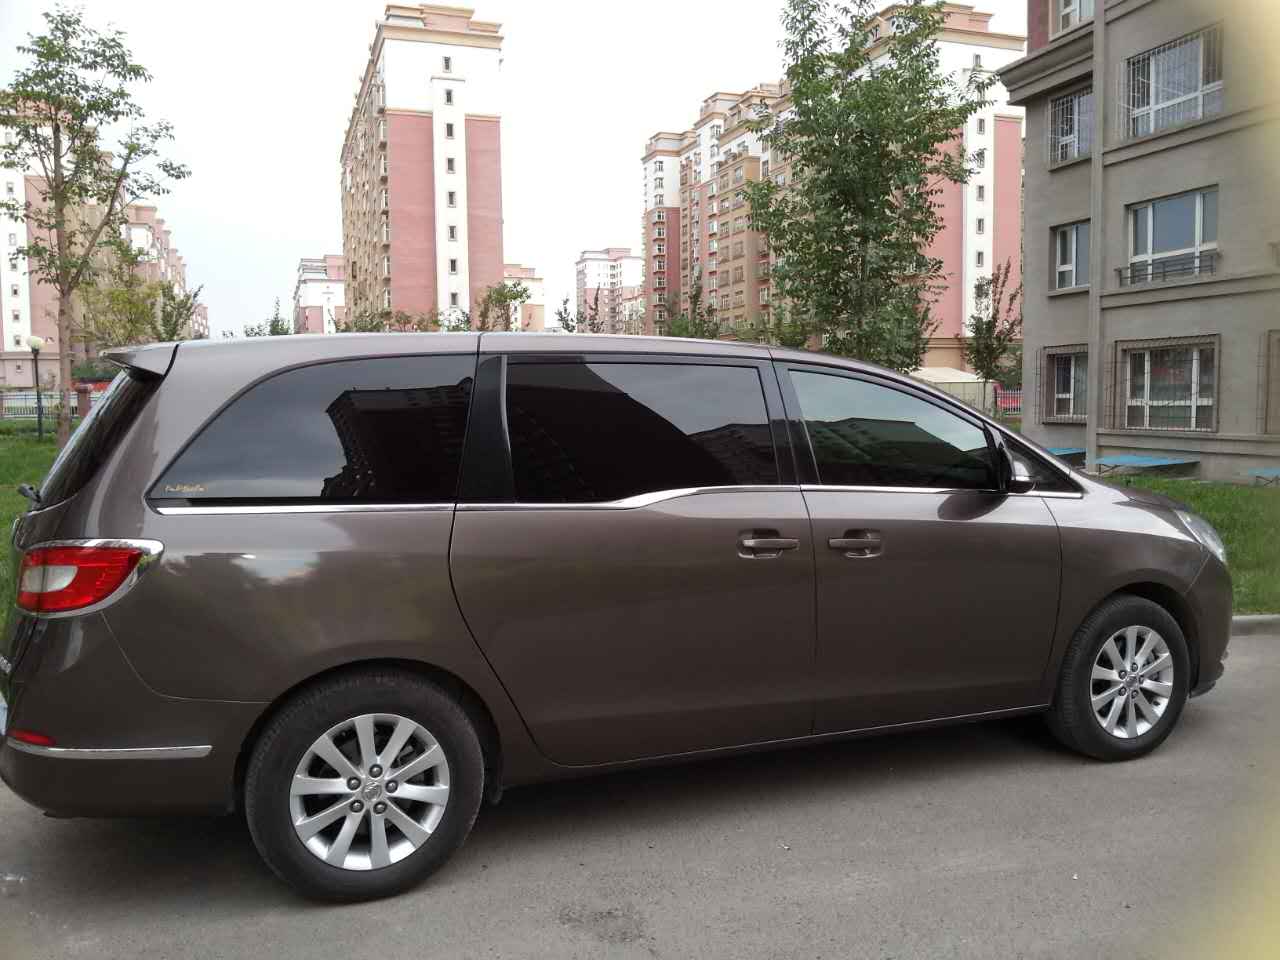 新疆乌鲁木齐房车租赁便宜 吉祥租车供应